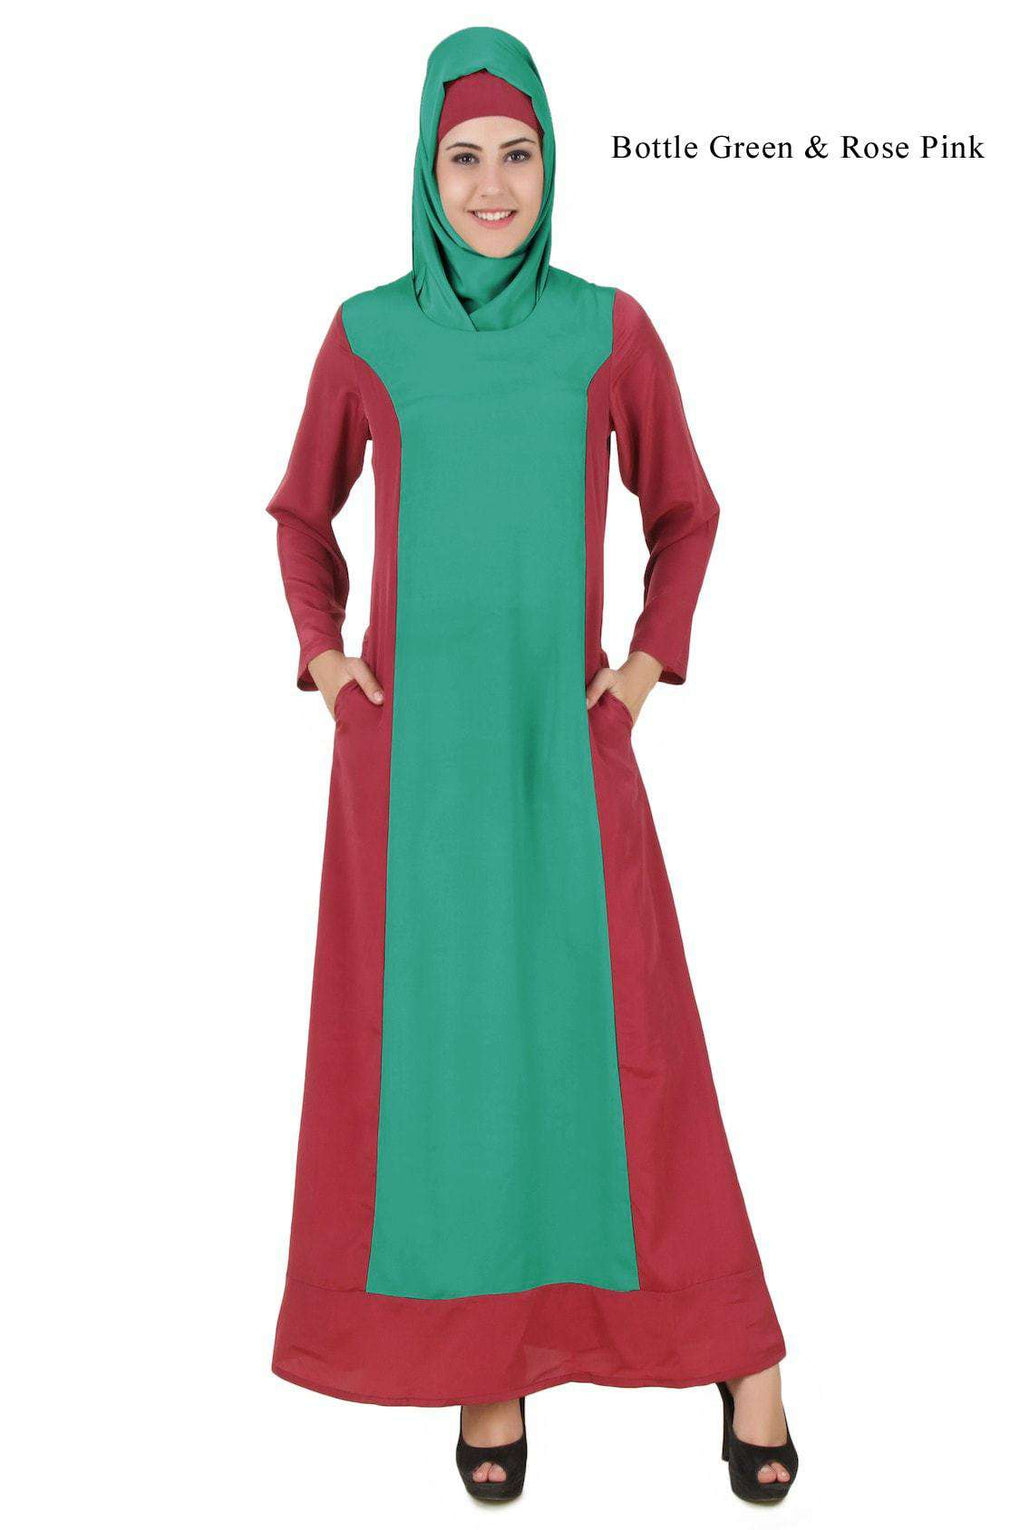 Arshi Slim Look Bottle Green & Rose Pink Abaya'